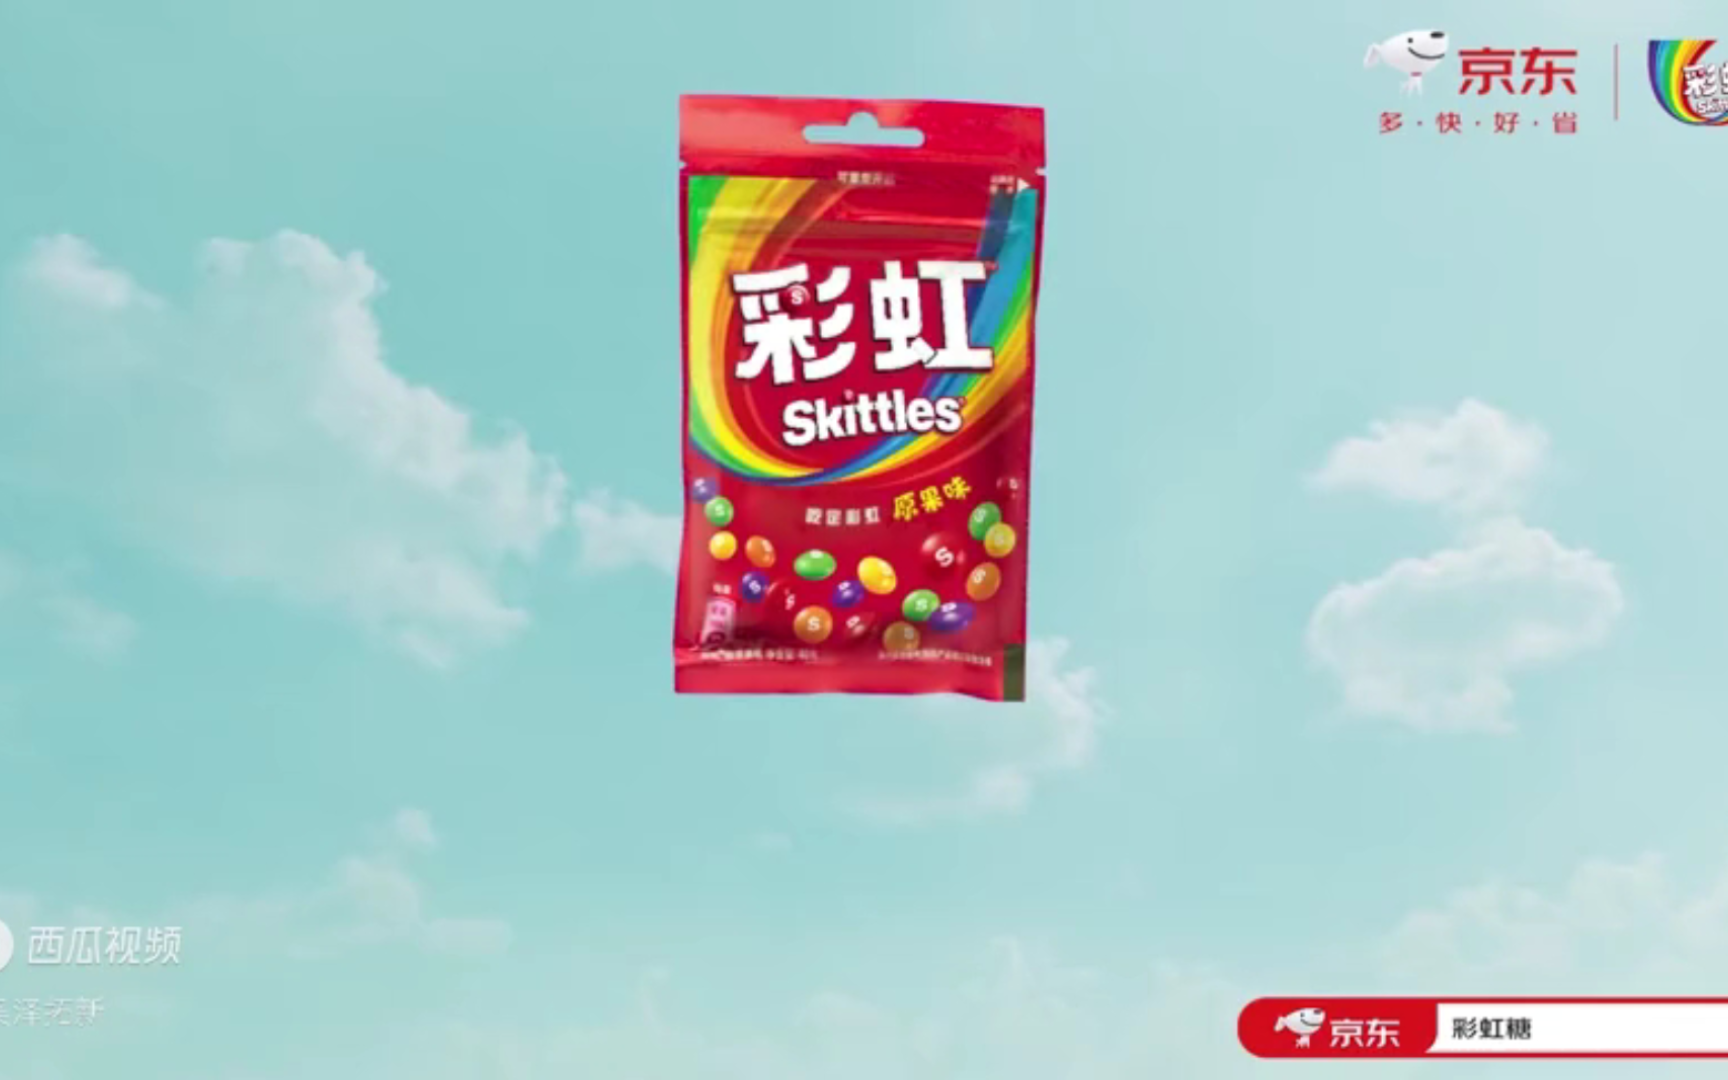 彩虹糖广告彩虹战队篇 刘昊然绿箭薄荷糖广告下雨篇